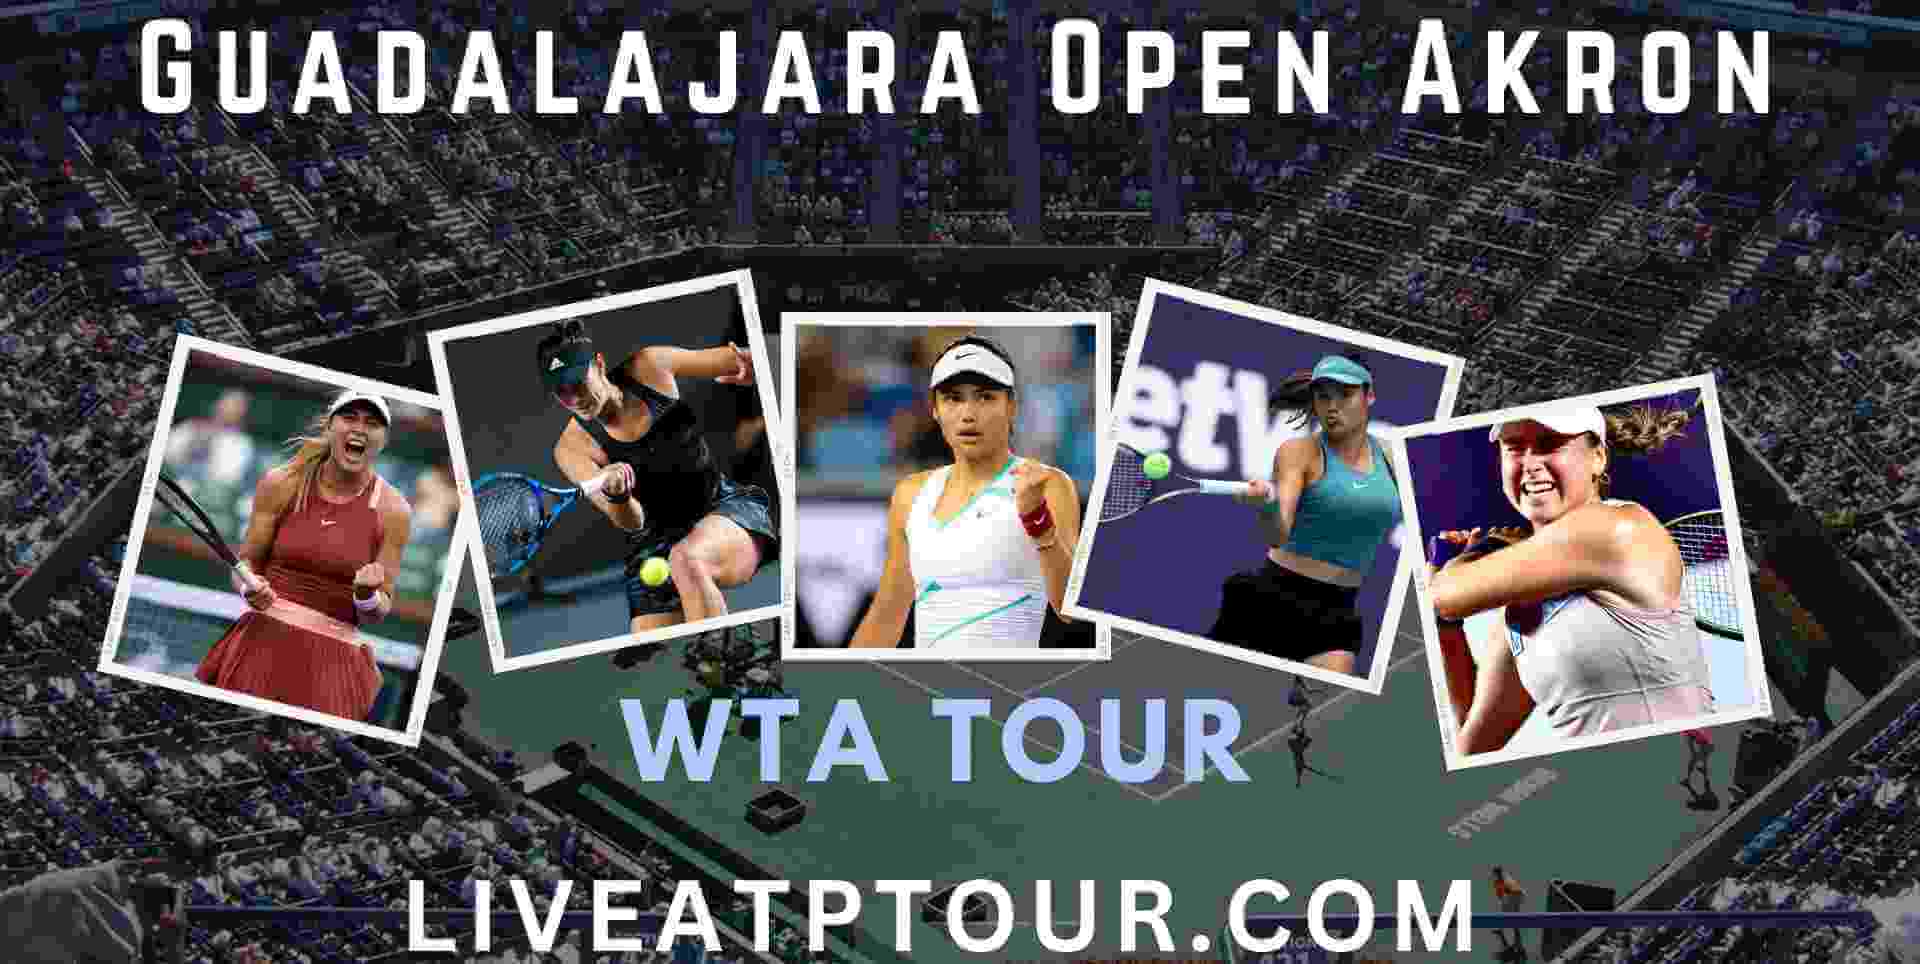 Guadalajara Open Akron Live Stream WTA Tour